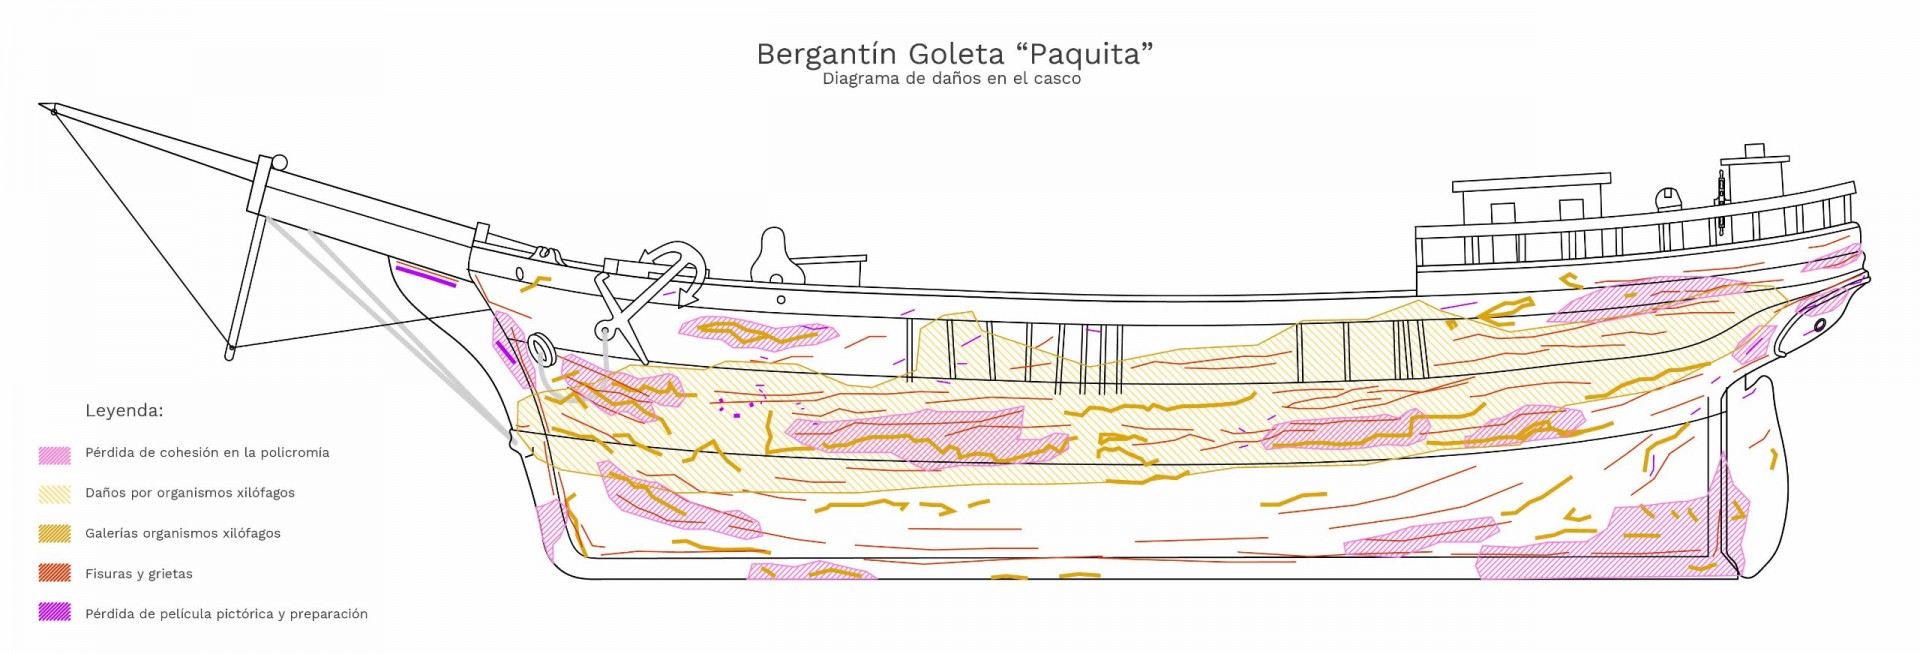 Diagrama de daños Casco BG Paquita